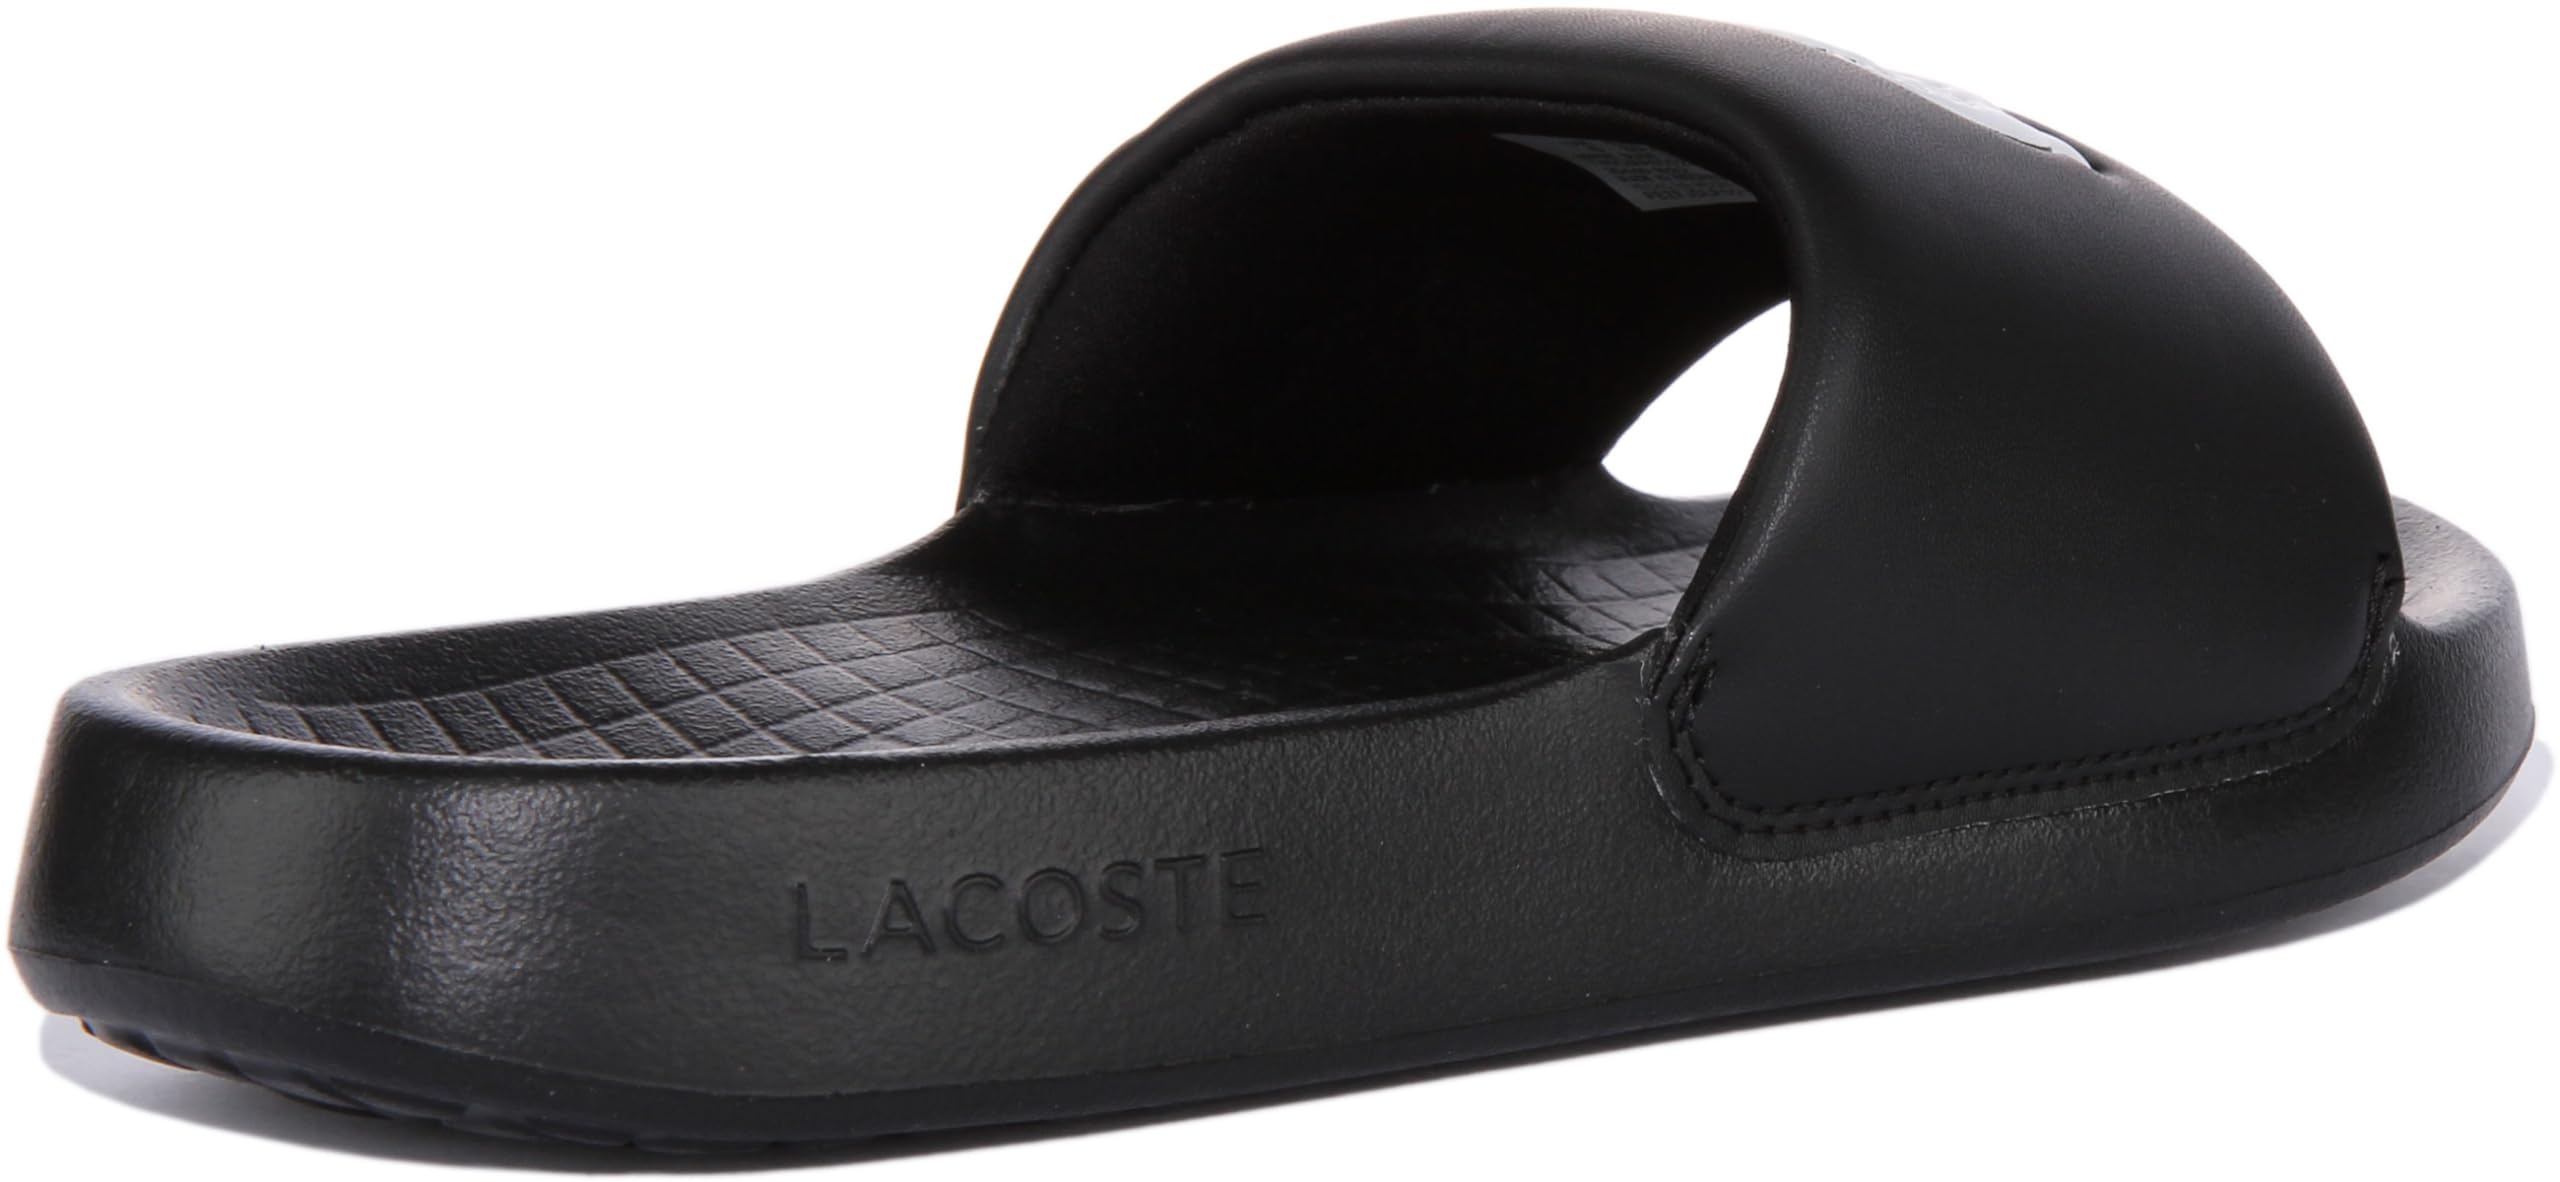 Lacoste Herren Croco 1.0 Synthetic Slides Sandale, Schwarz, 46 EU - 46 EU